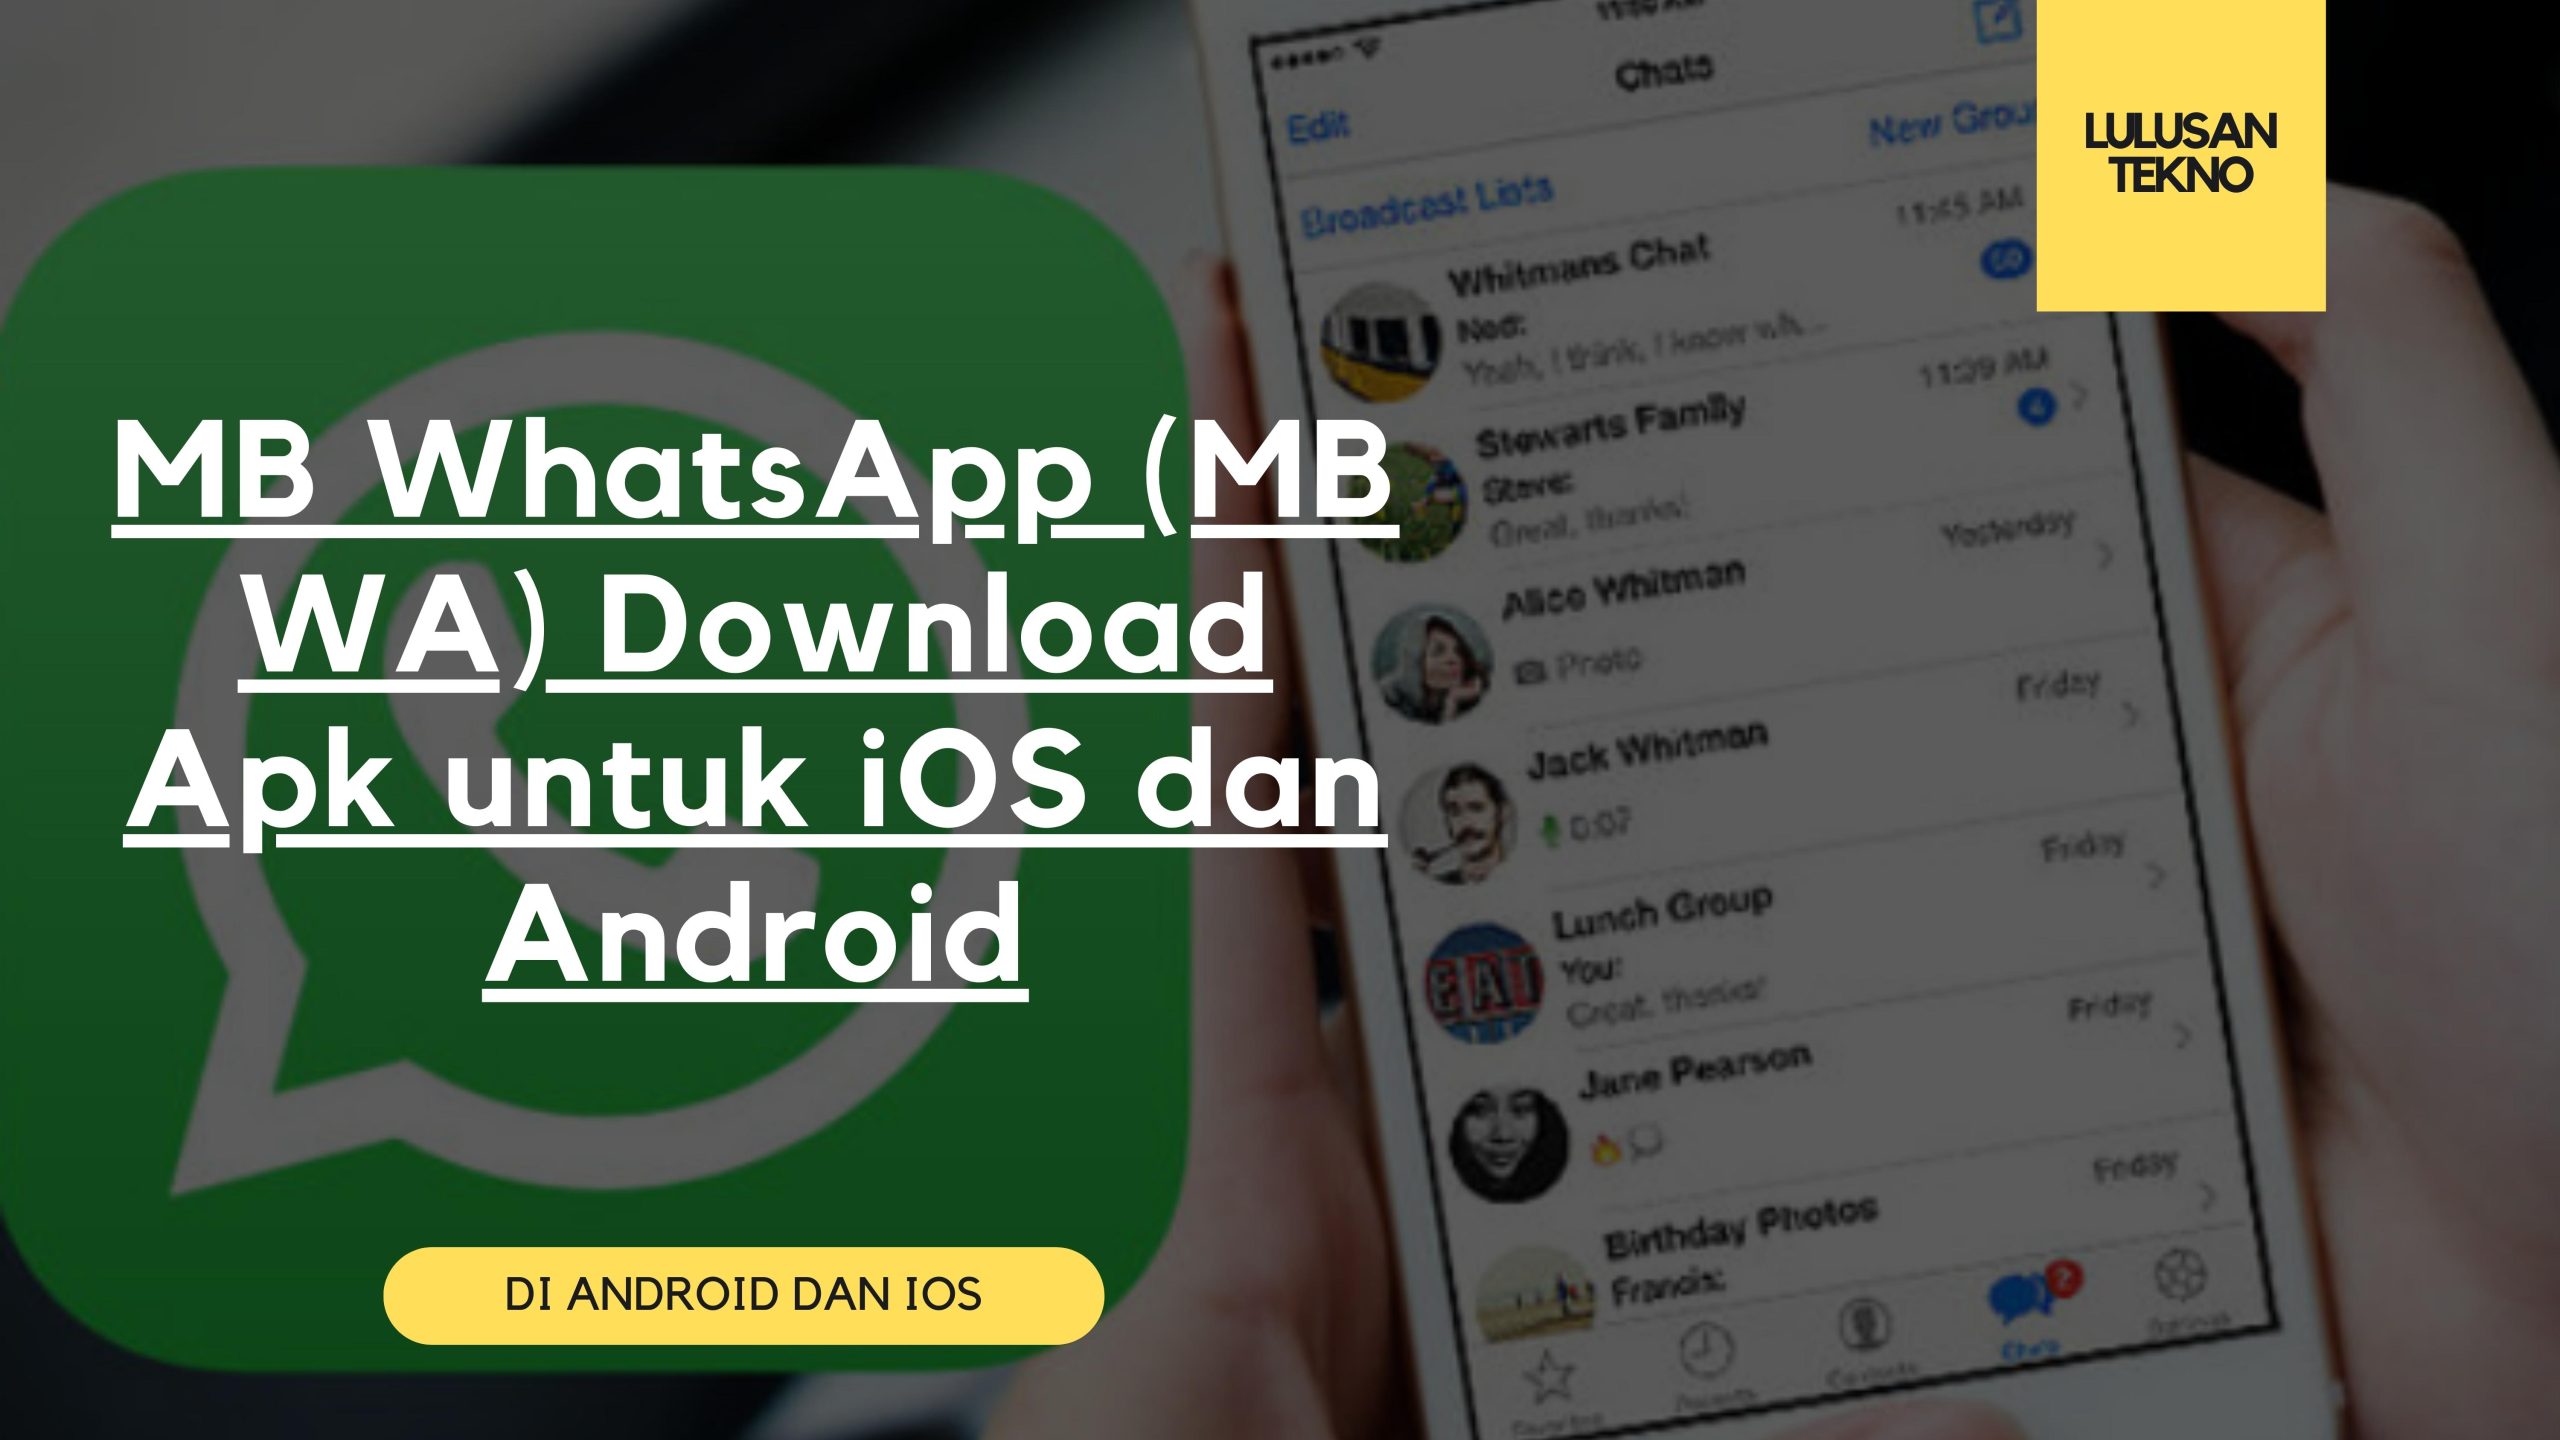 MB WhatsApp (MB WA) Download Apk untuk iOS dan Android